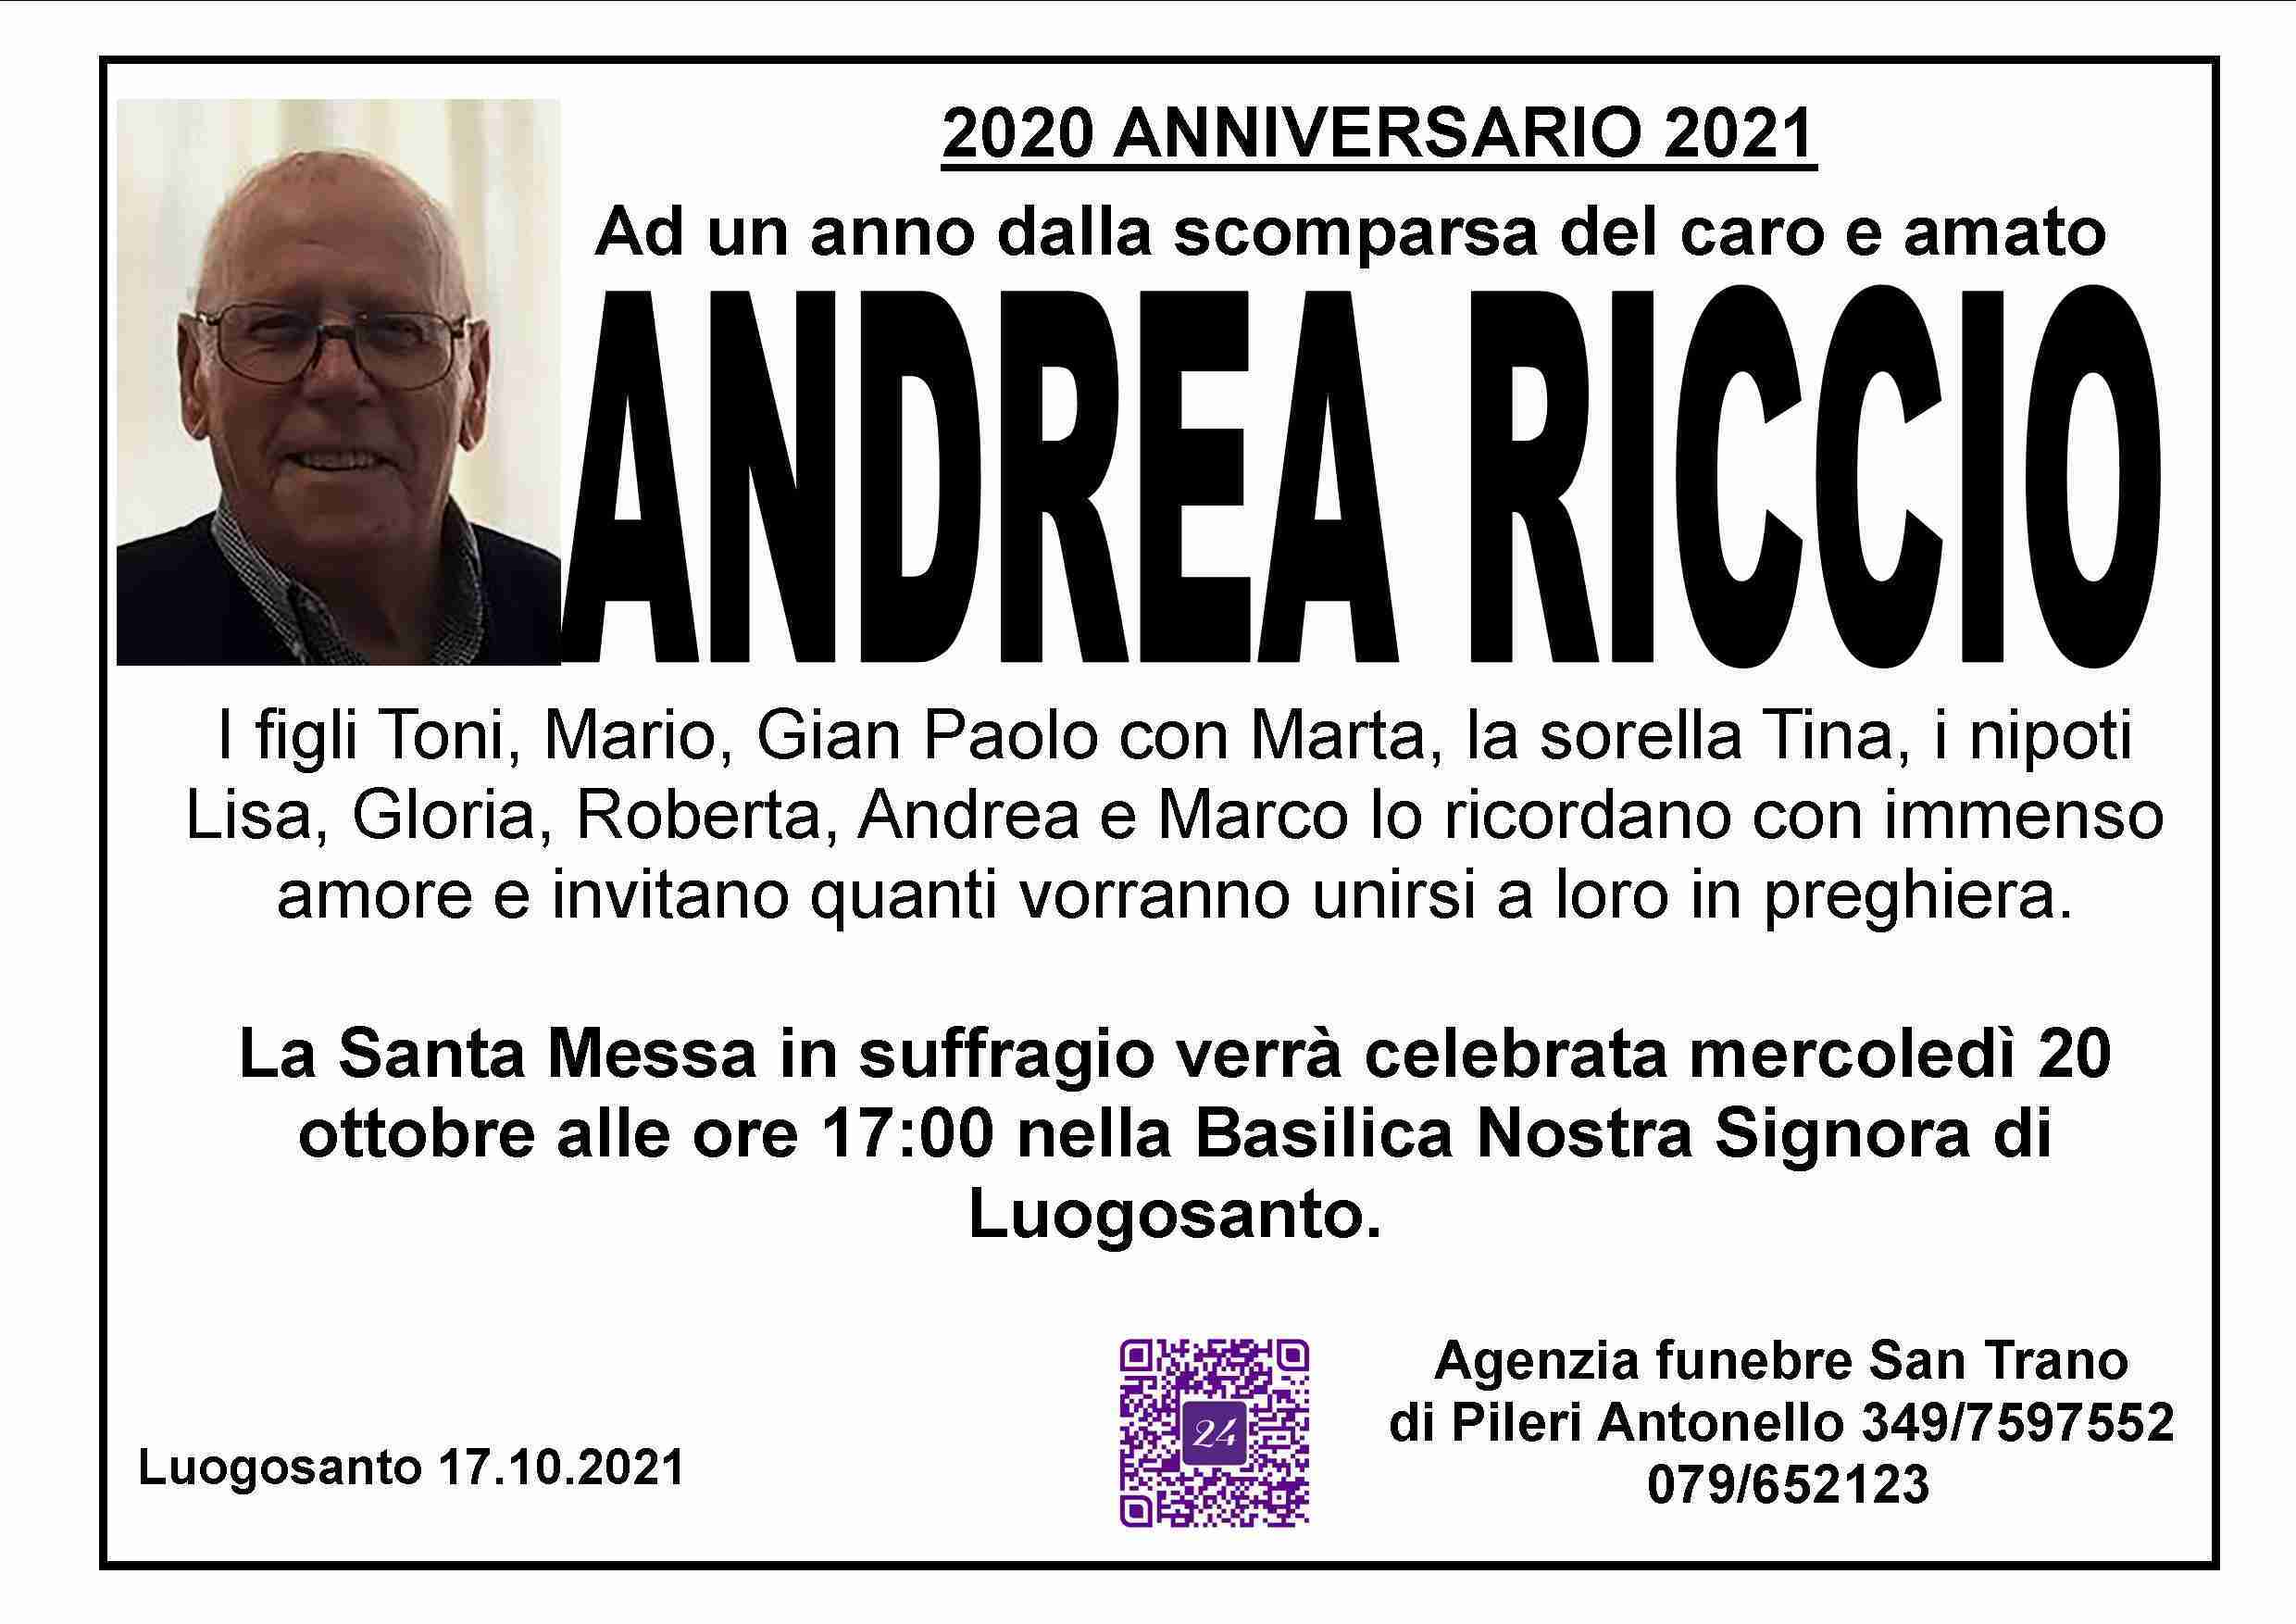 Andrea Riccio